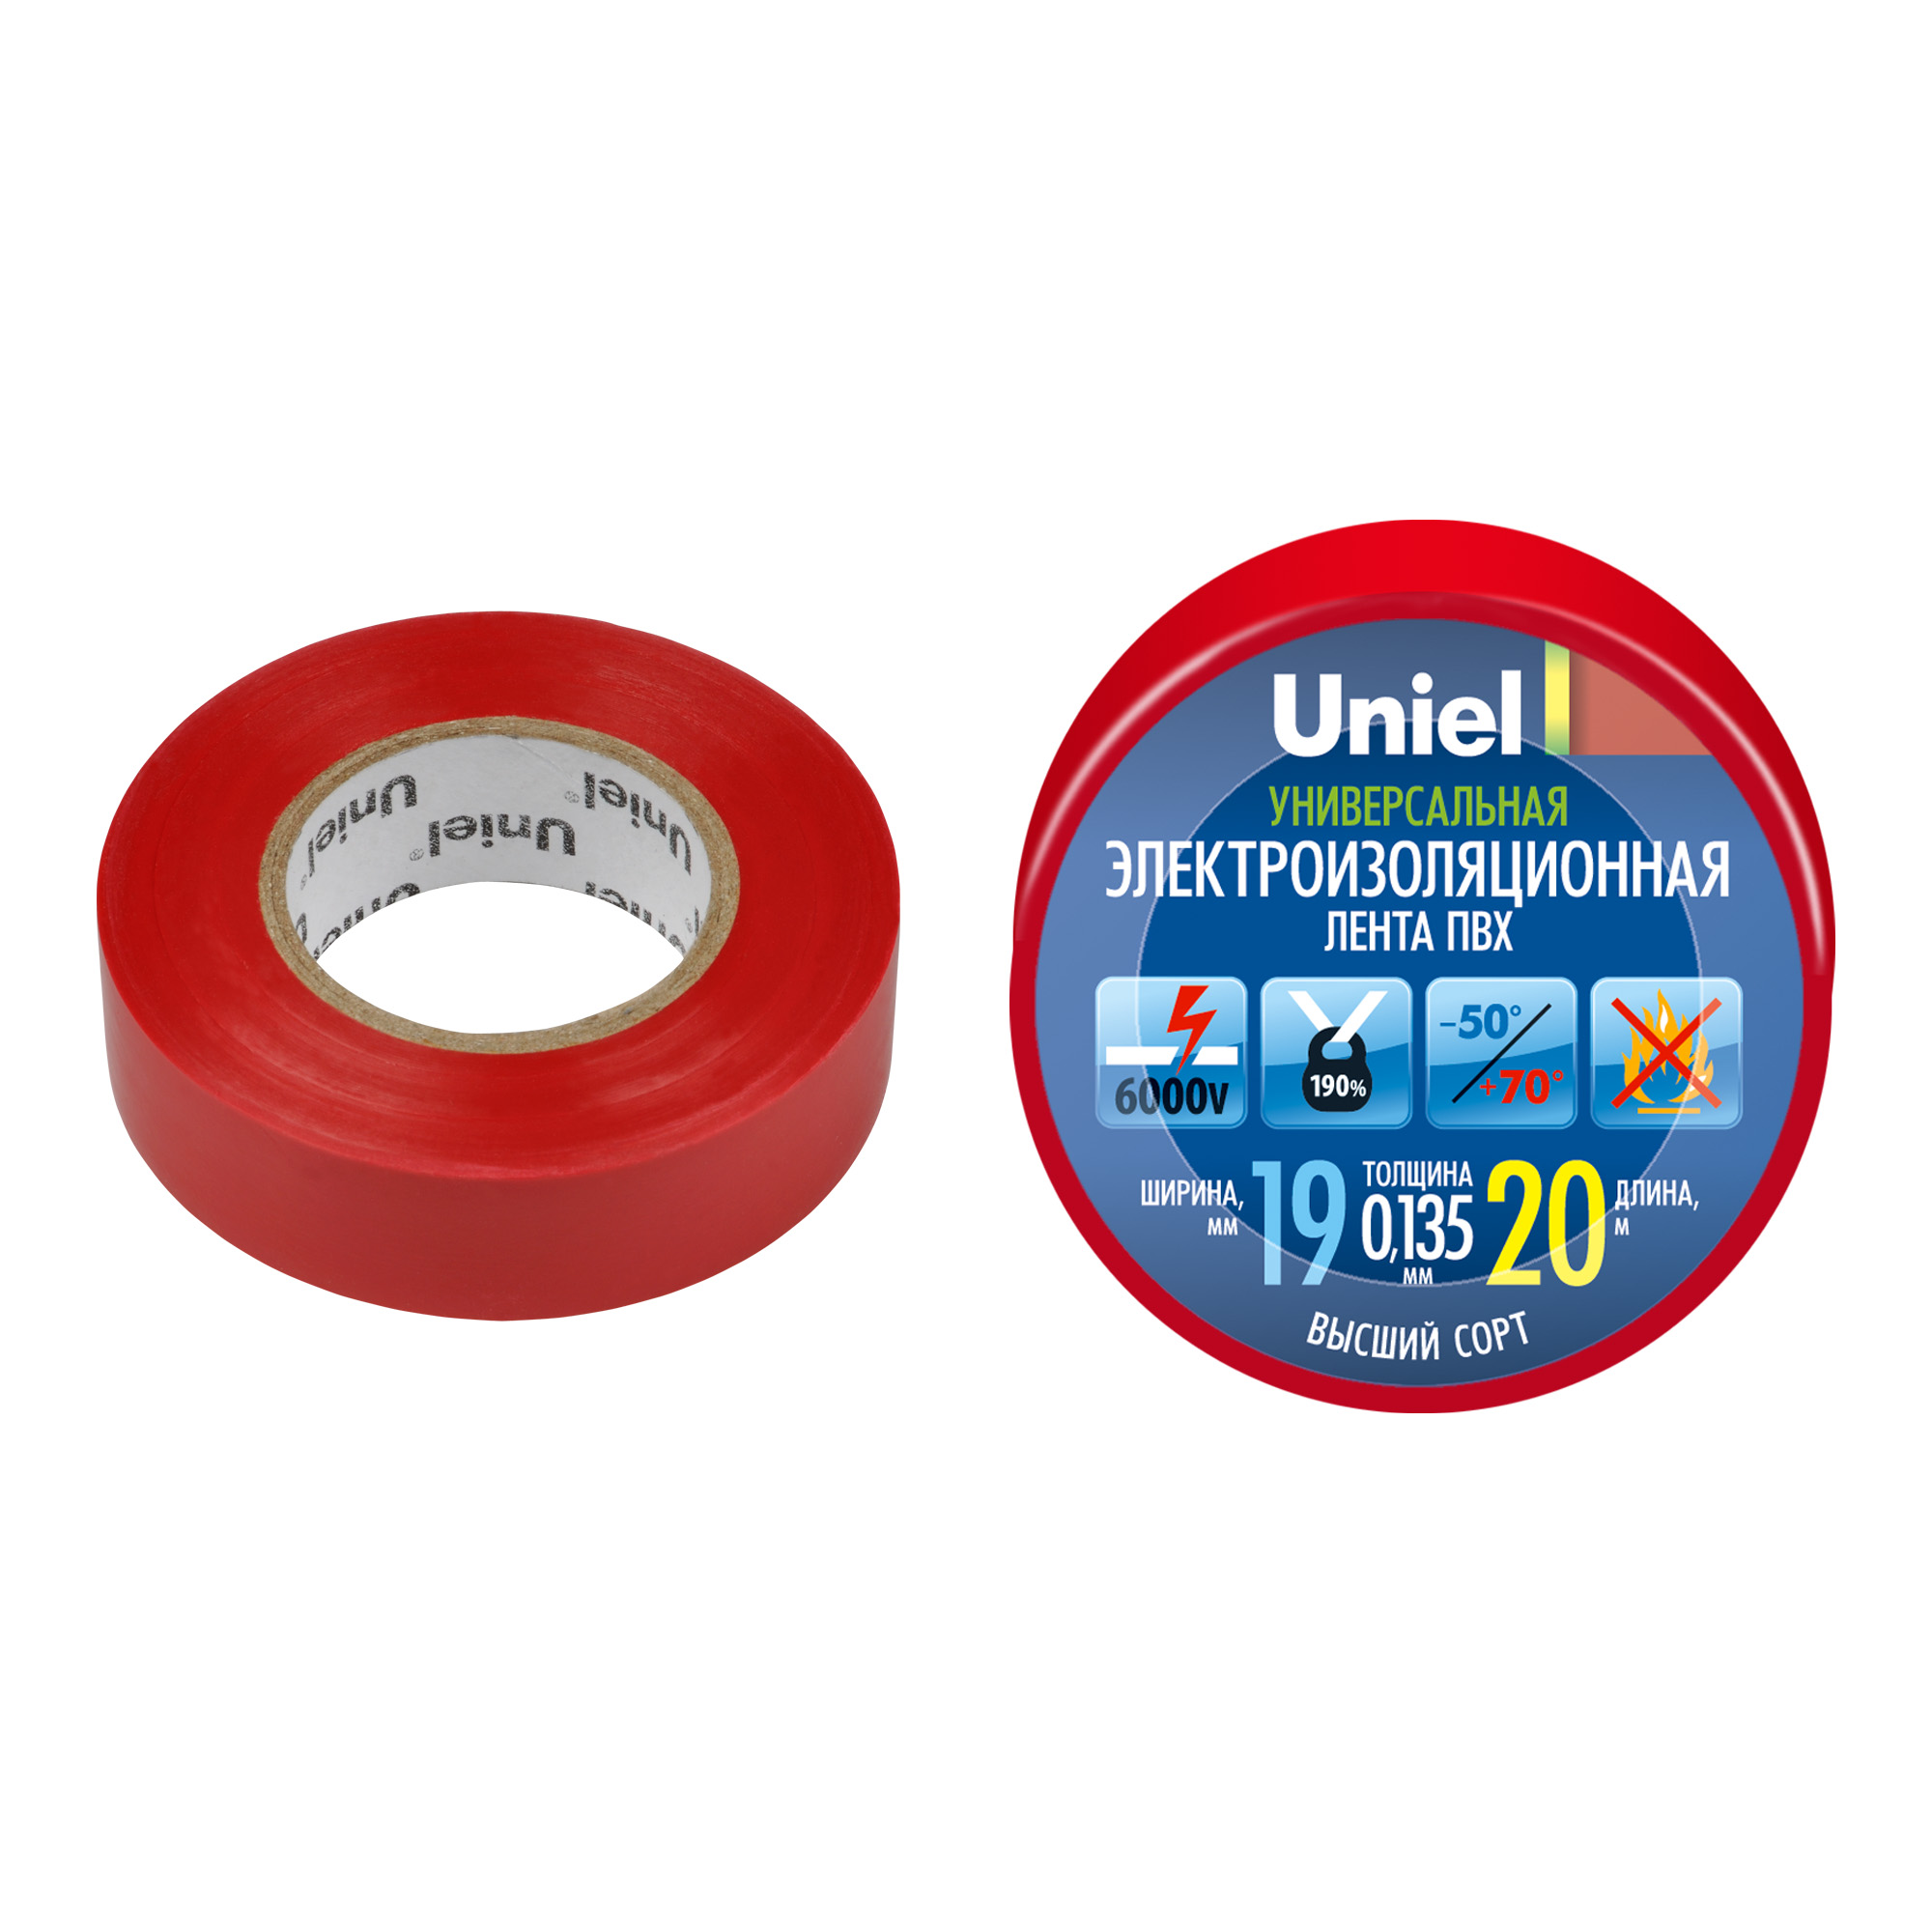 UIT-135P 20-19-01 RED Изоляционная лента Uniel 20м. 19мм. 0.135мм. 1шт. цвет Красный